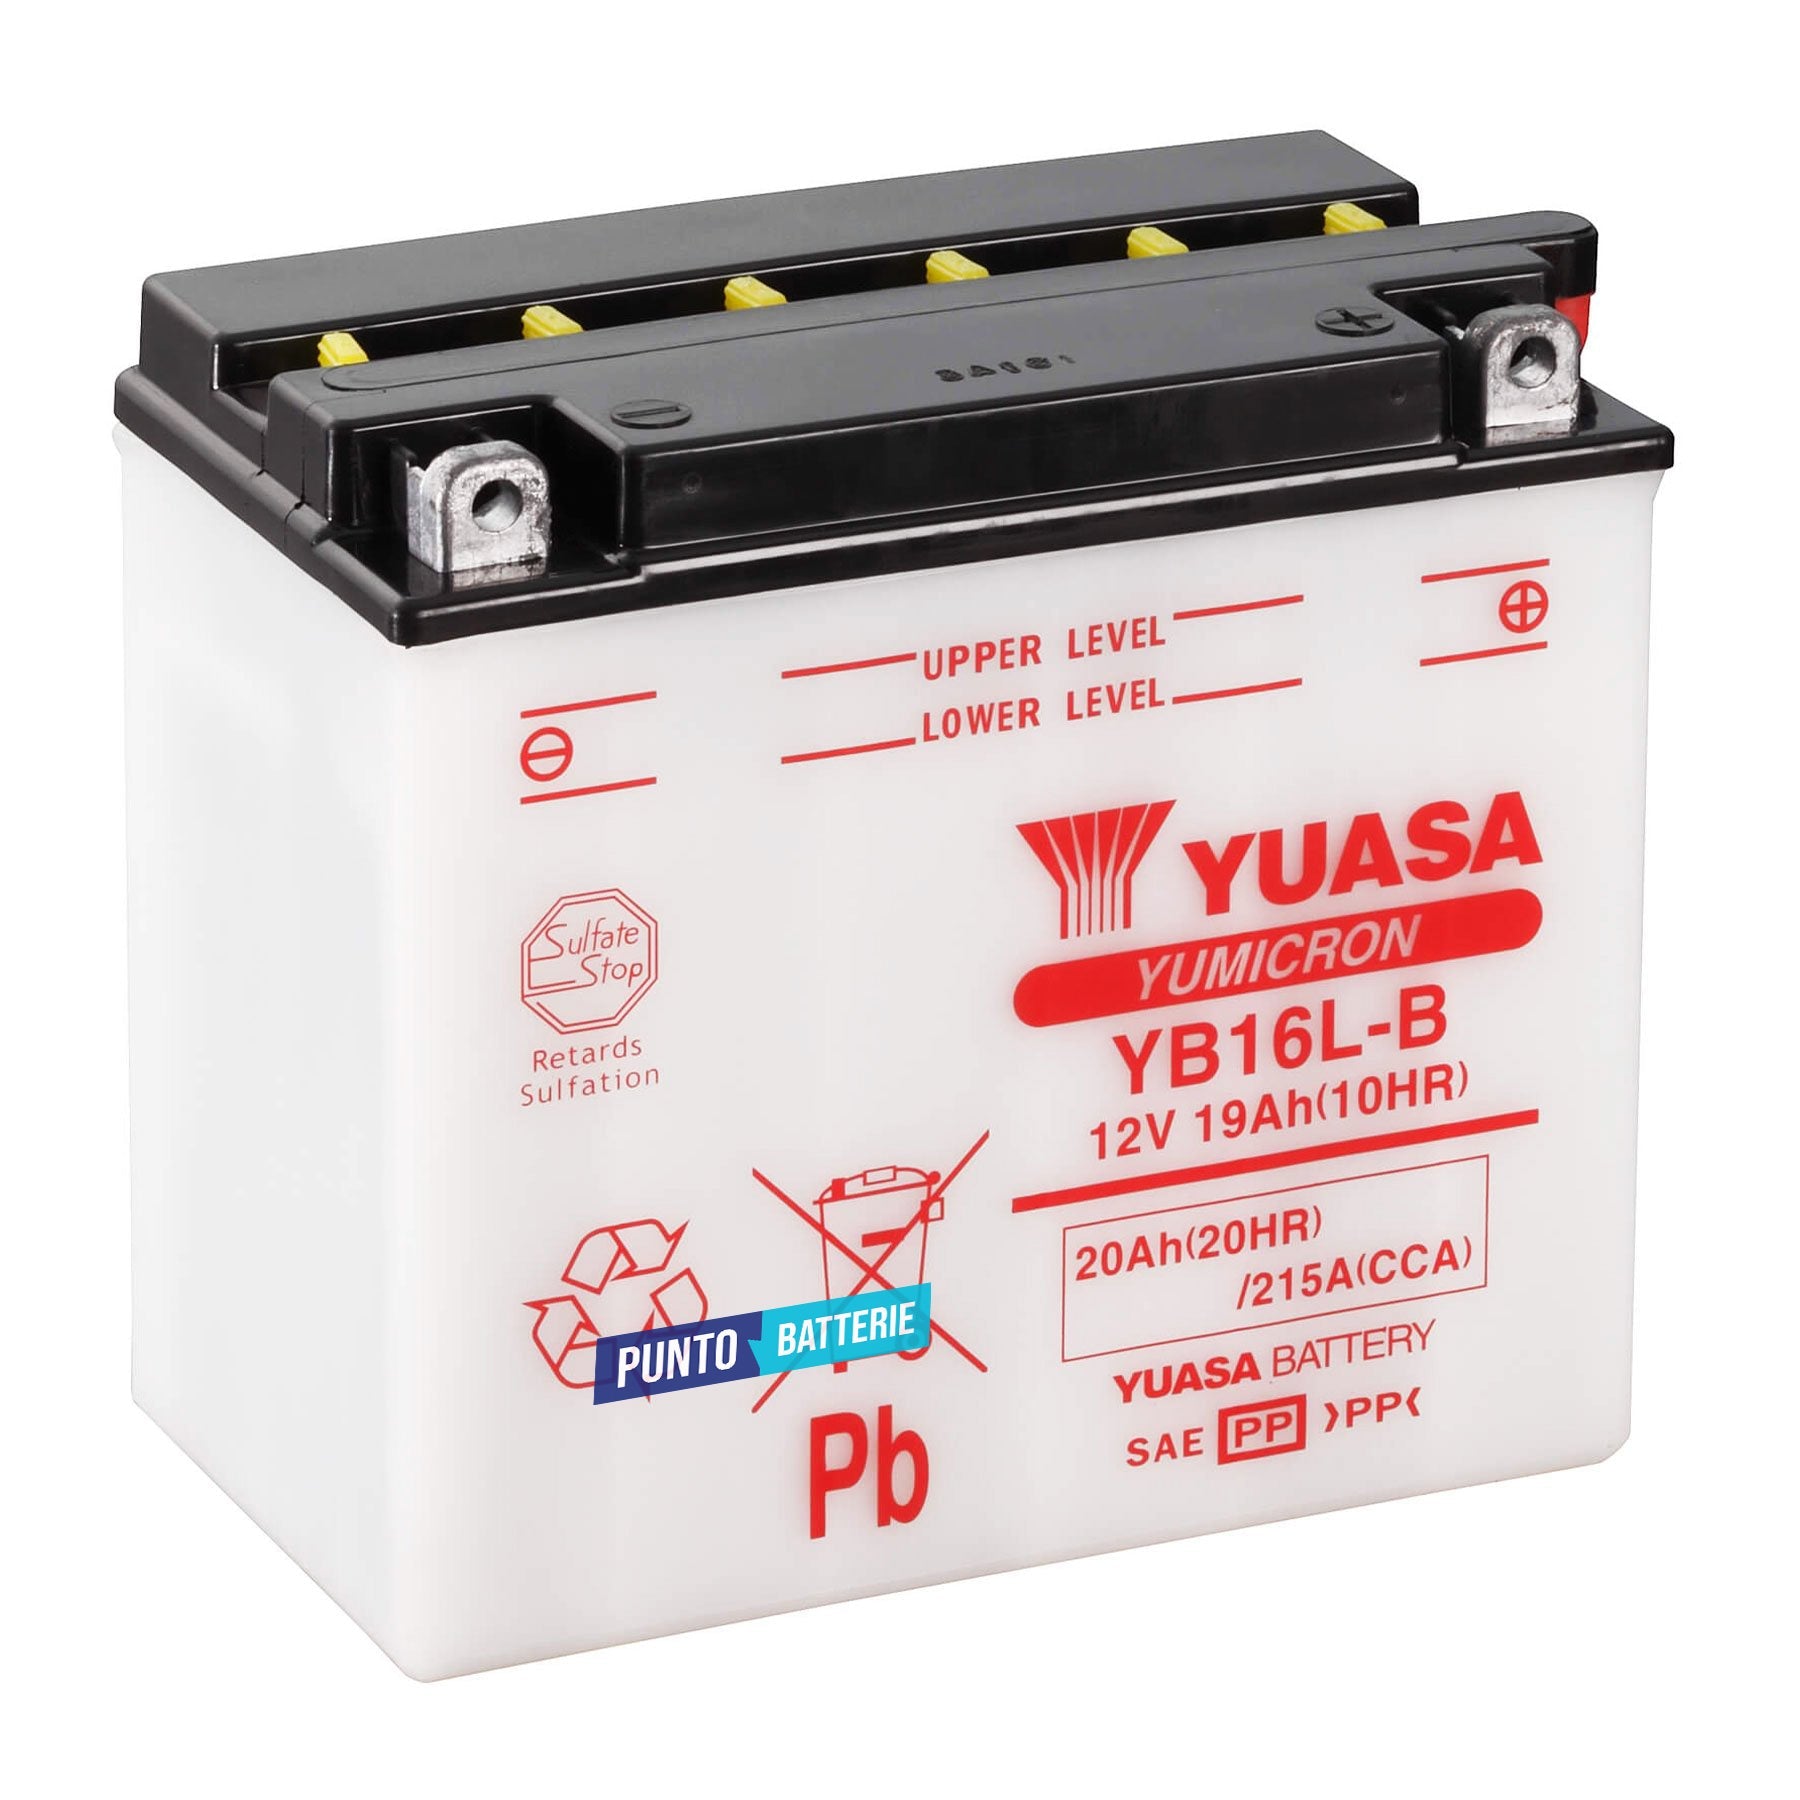 Batteria originale Yuasa YuMicron YB16L-B, dimensioni 175 x 100 x 155, polo positivo a destra, 12 volt, 19 amperora, 215 ampere. Batteria per moto, scooter e powersport.